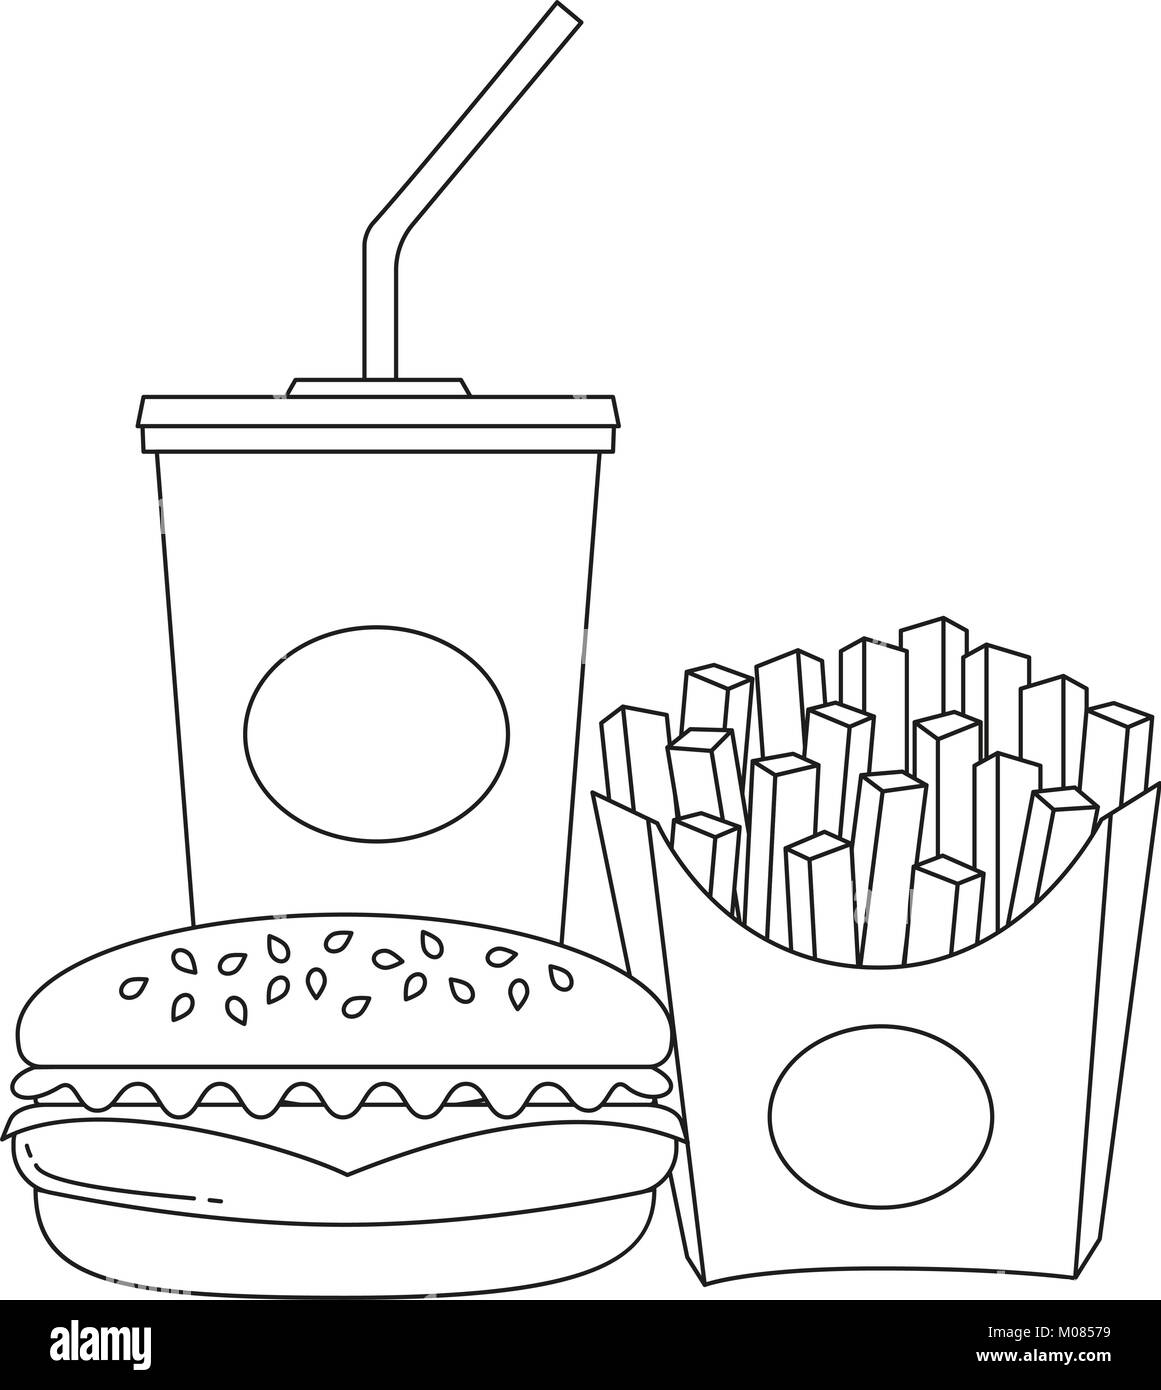 Schwarze Und Weisse Linie Art Poster Fast Food Soda Burger Pommes Frites Stock Vektorgrafik Alamy